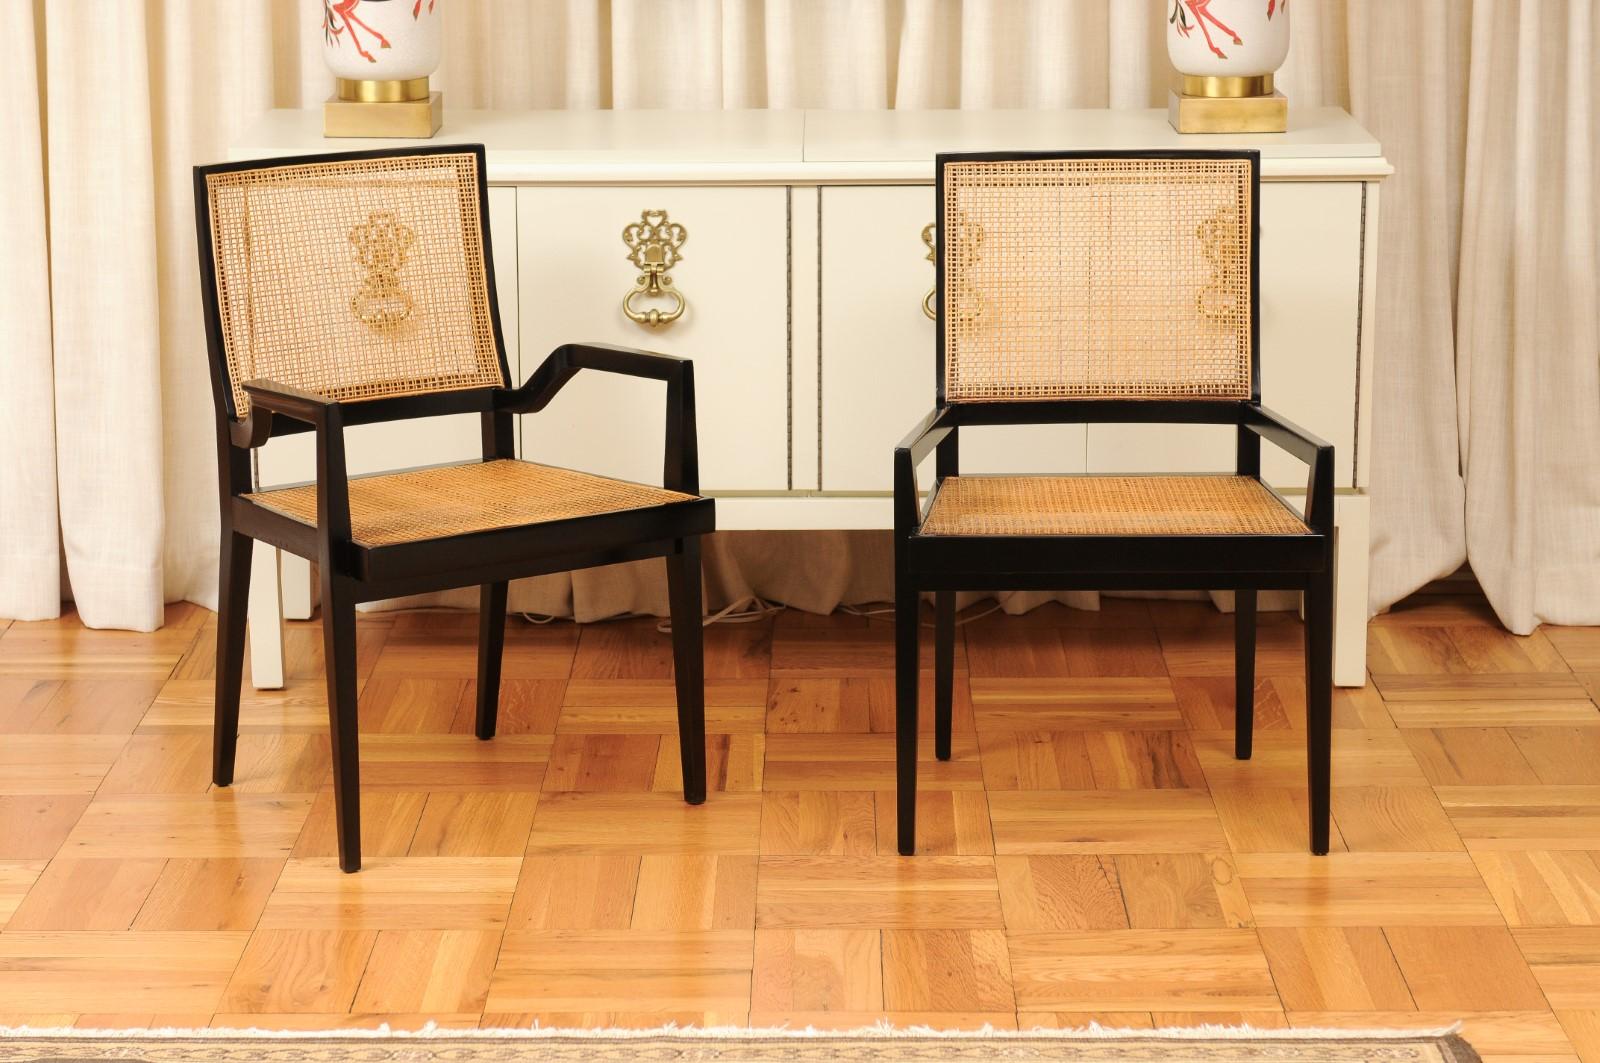 Ce grand ensemble restauré d'exemplaires de sièges impossibles à trouver est unique sur le marché mondial. Ces magnifiques chaises de salle à manger sont expédiées telles qu'elles ont été photographiées par des professionnels et décrites dans